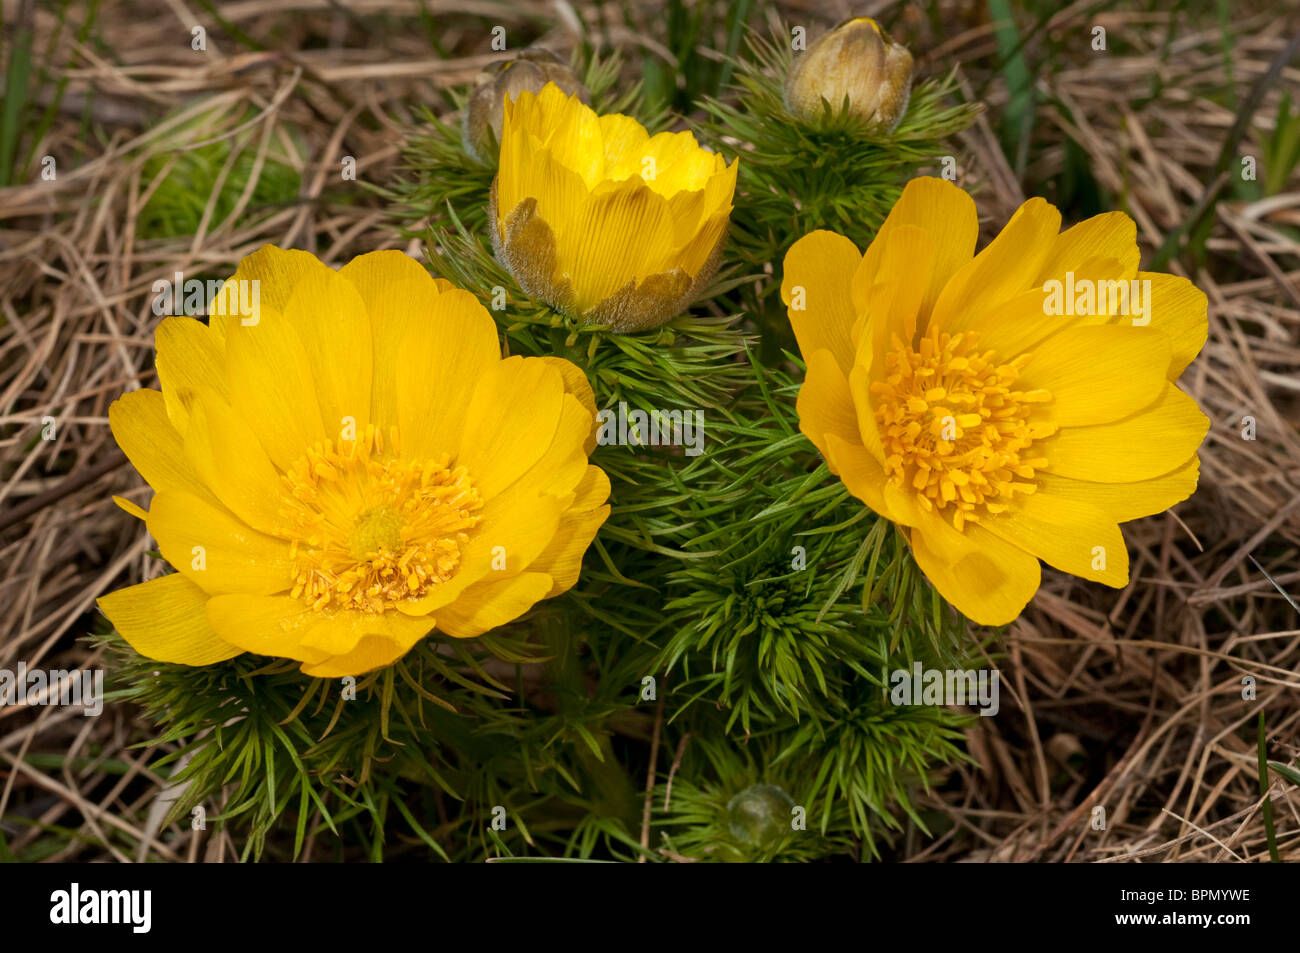 Adonis du printemps, le jaune des yeux Faisans (Adonis vernalis), plante à fleurs. Banque D'Images